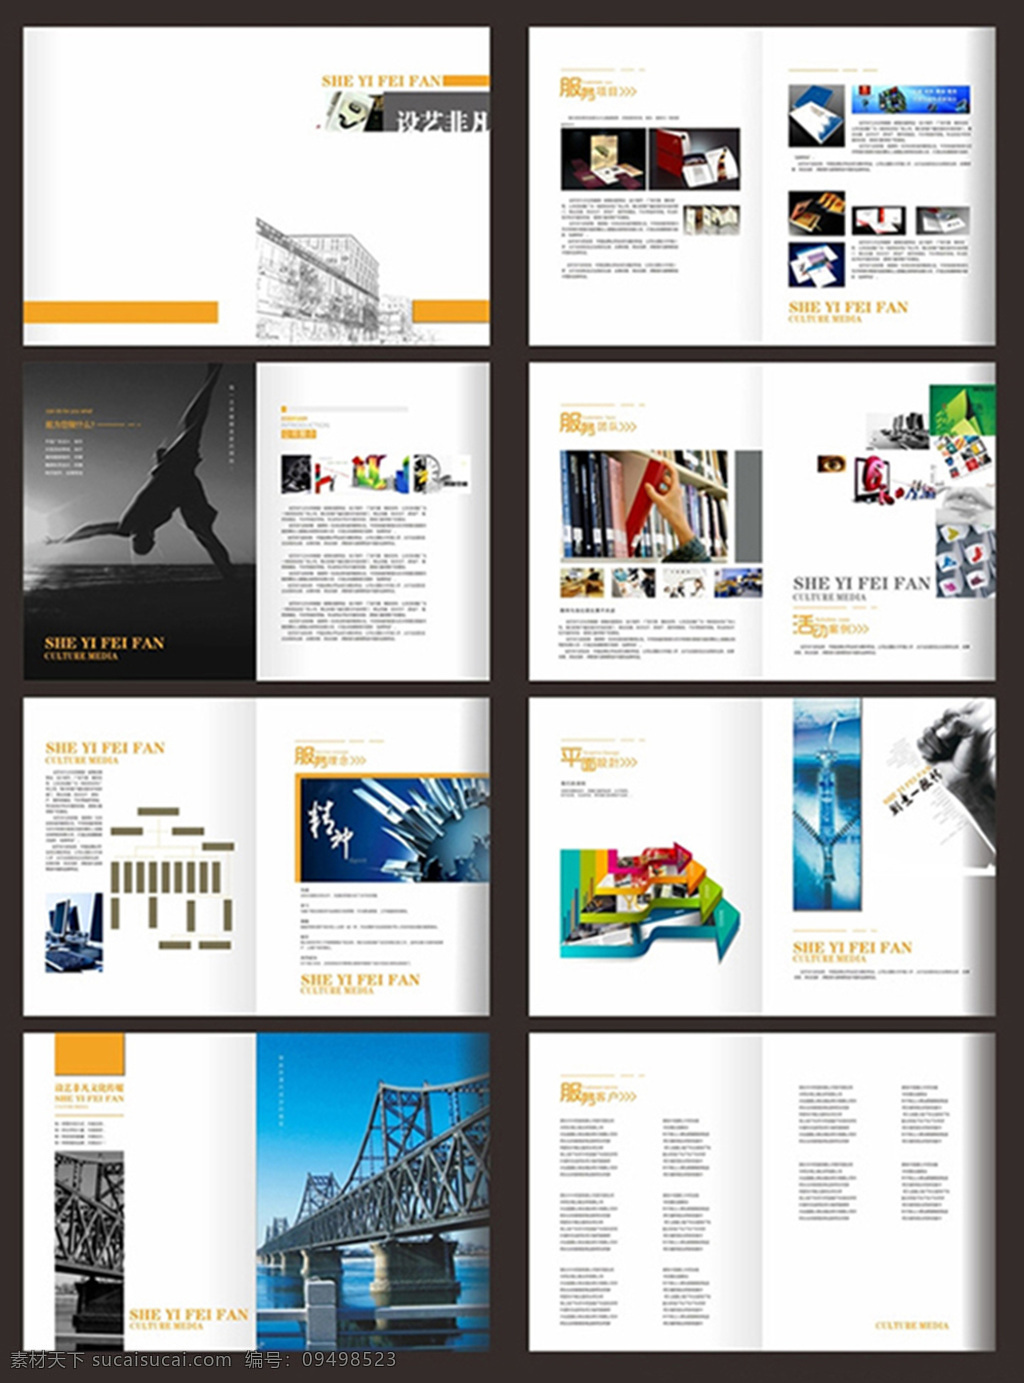 公司 企业 文化 宣传画册 广告 设计公司 宣传 画册 白色